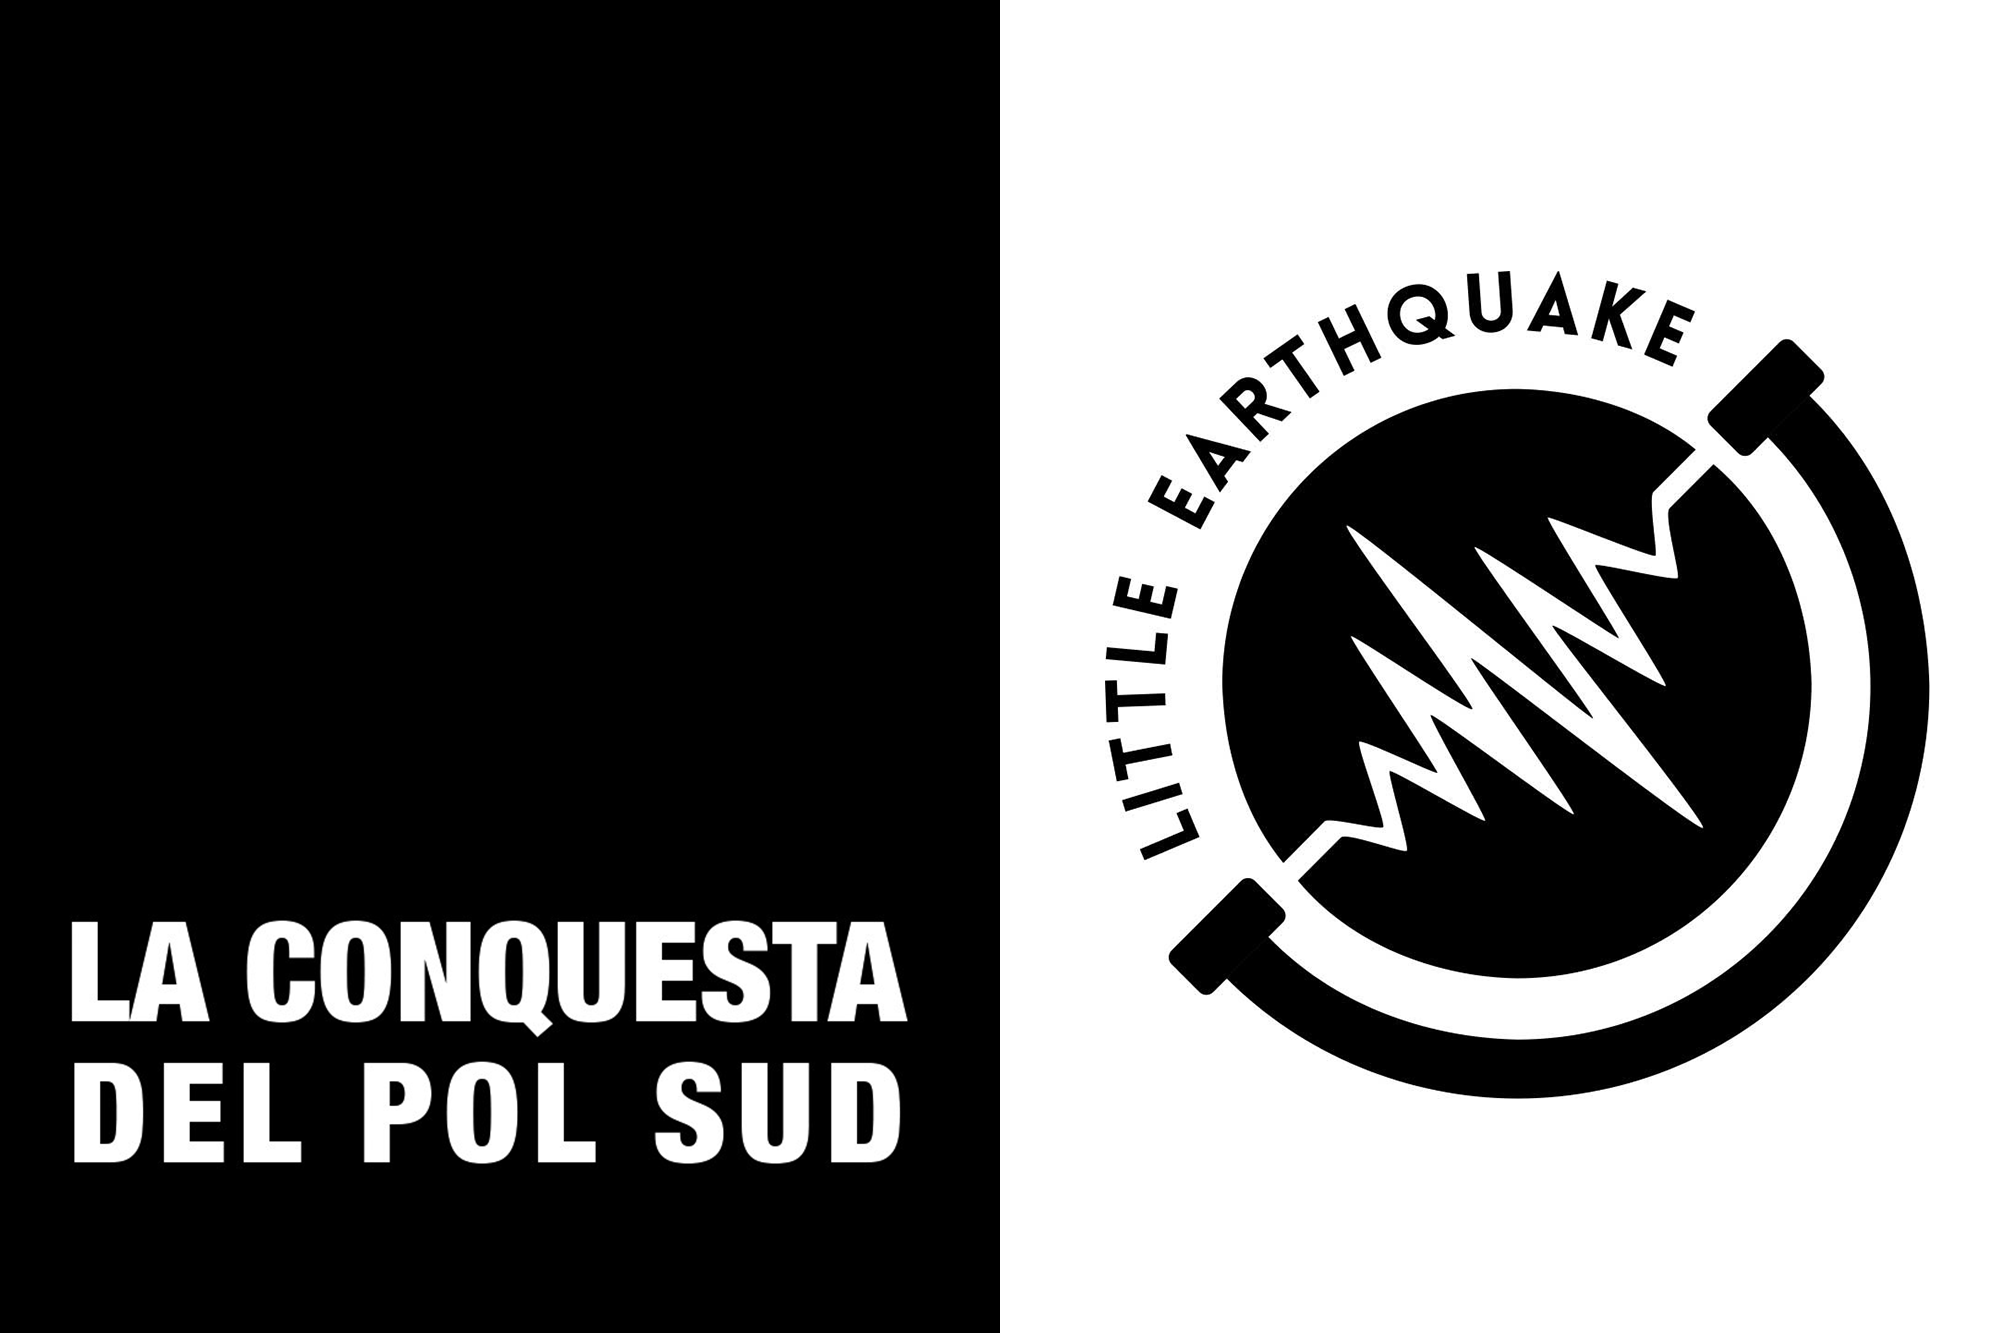 La Conquesta del Pol Sud logo and Little Earthquake logo